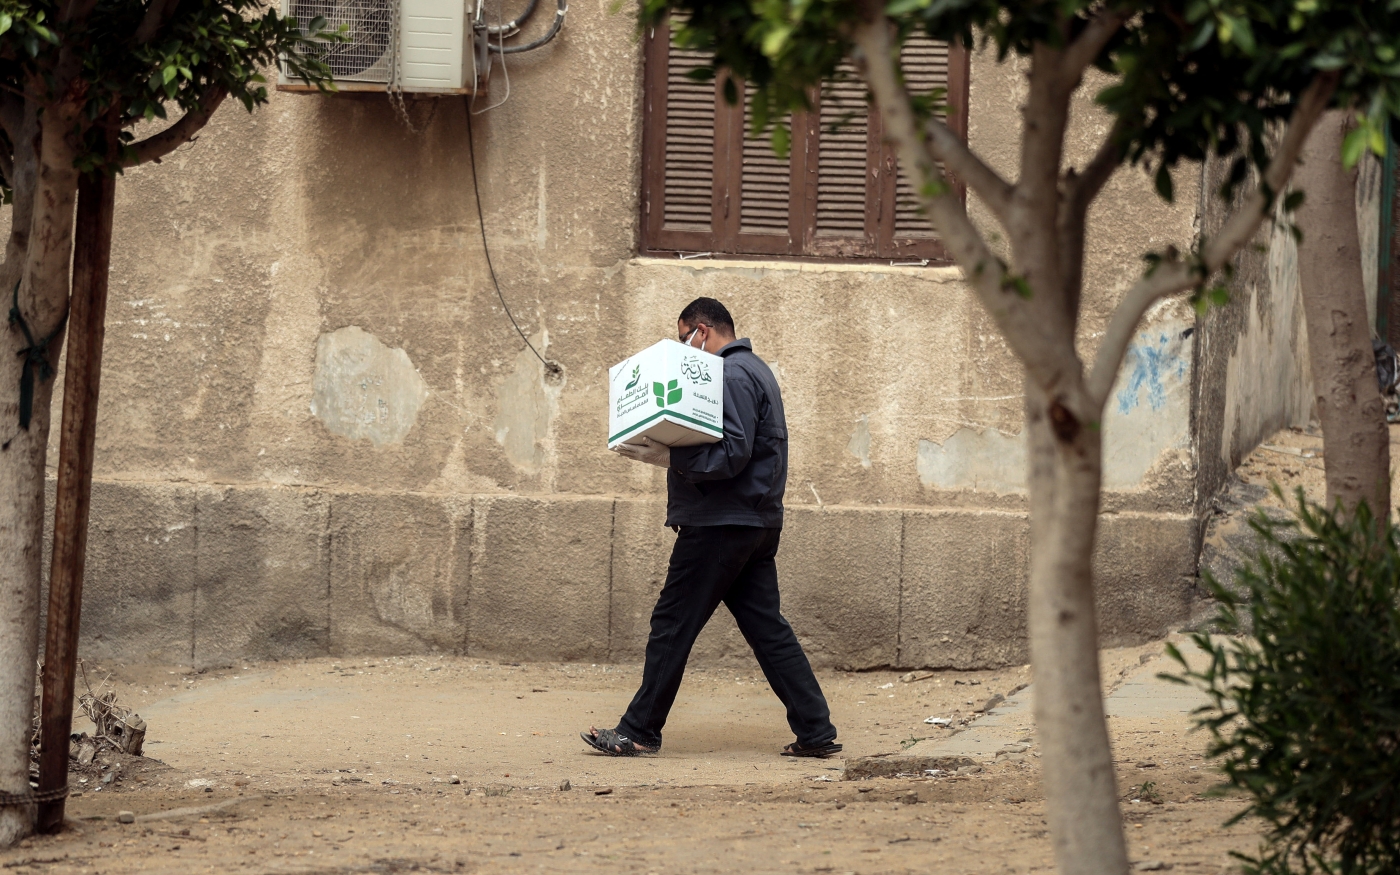 Un Égyptien transporte une boîte contenant des denrées alimentaires distribués par l'ONG Egyptian Food Bank, au Caire, le 5 avril 2020 (AFP)